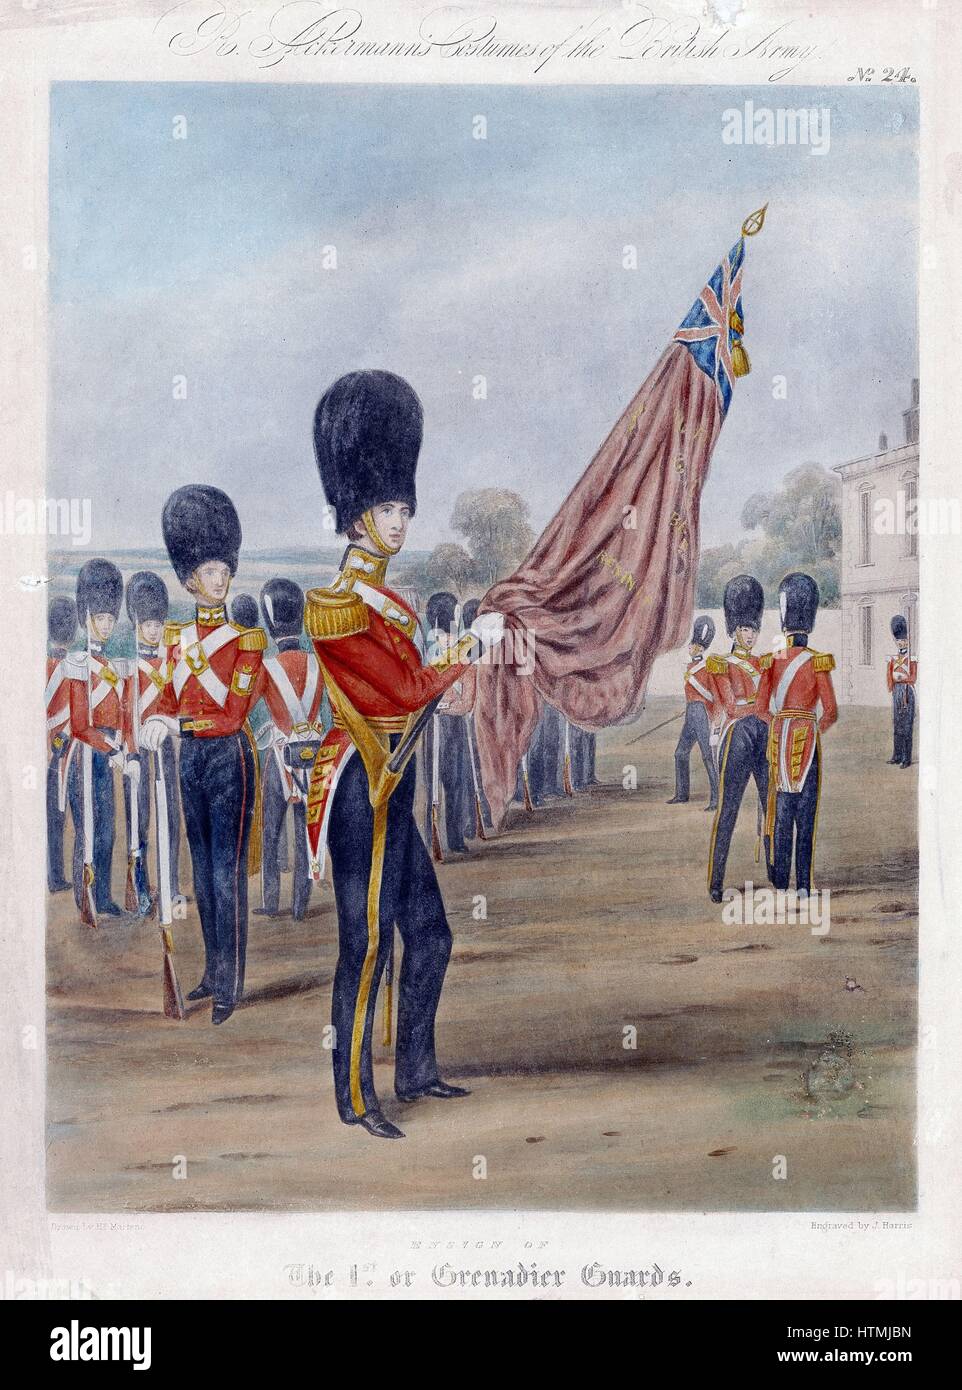 L'Étoile du Grenadier Guards. 'Note' de grenades sur les colliers et ceintures. À partir de la R. Ackermann 'Costumes de l' Armée britannique, 1844. Lithographie Banque D'Images